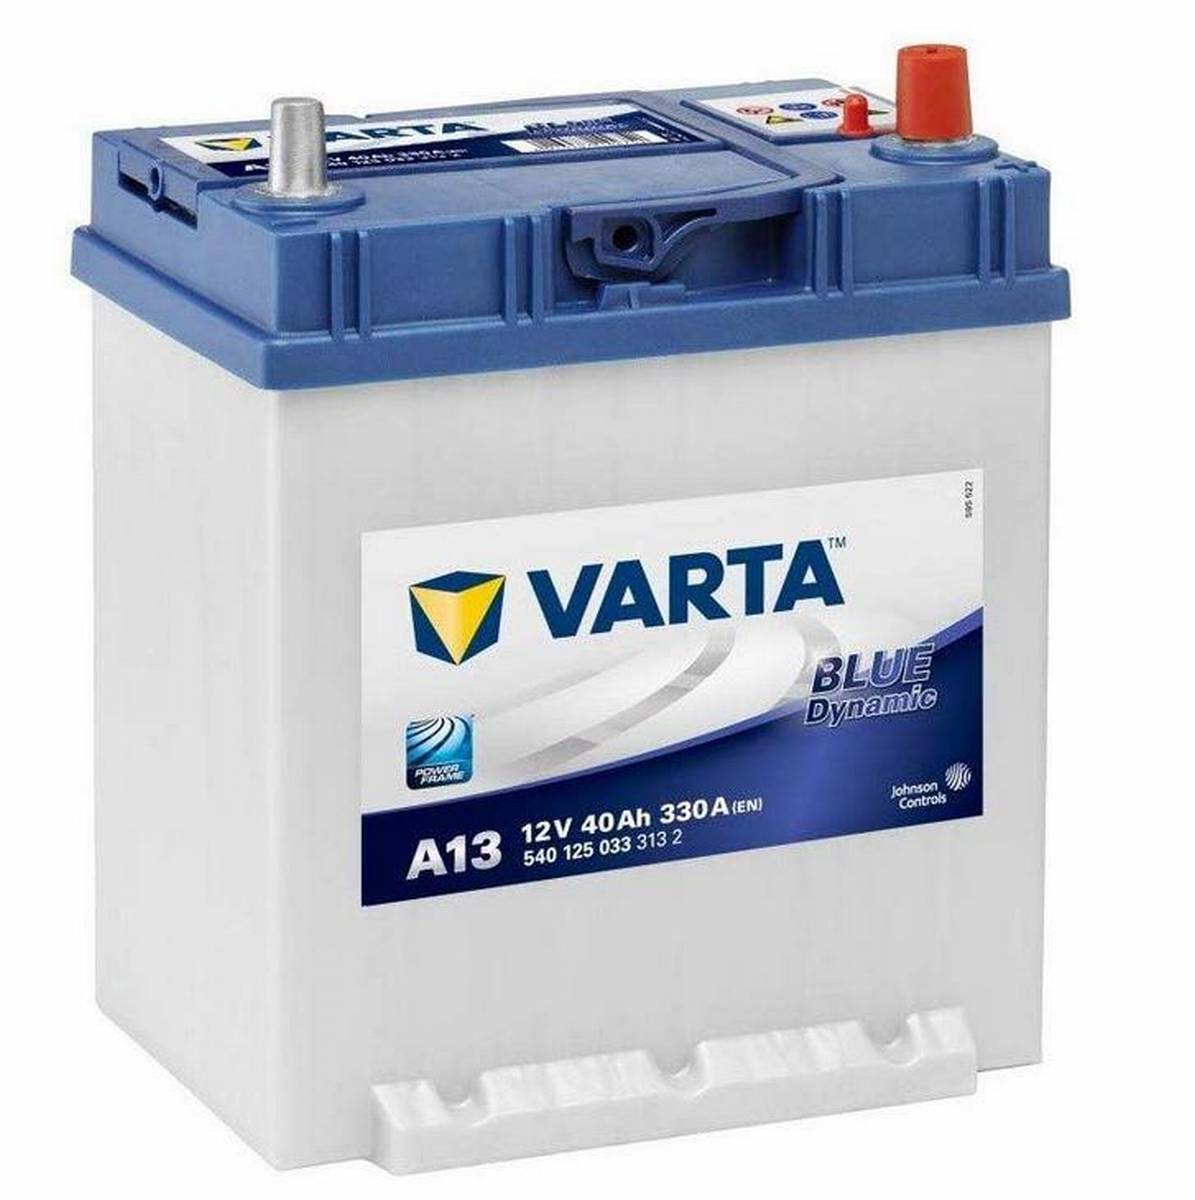 VARTA A13 Blue Dynamic 12V 40Ah 330A Autobatterie 540 125 033